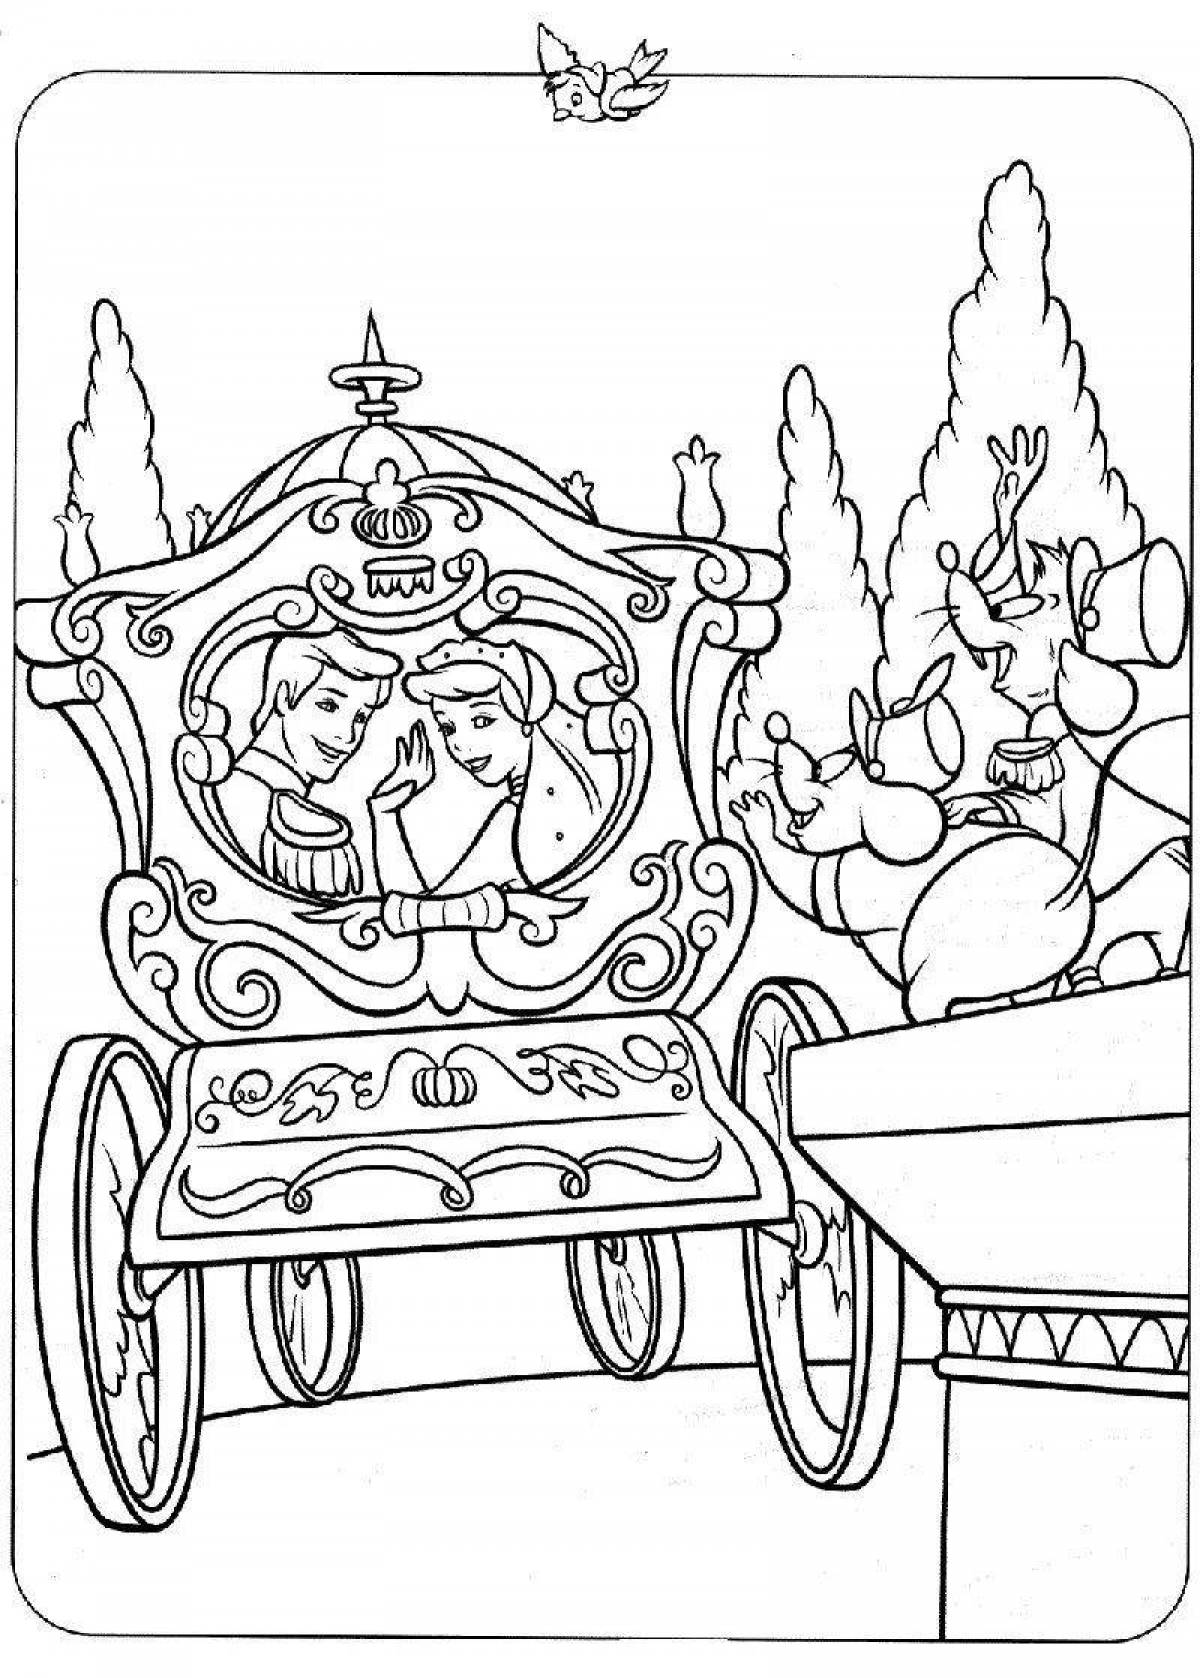 Cinderella's carriage coloring page